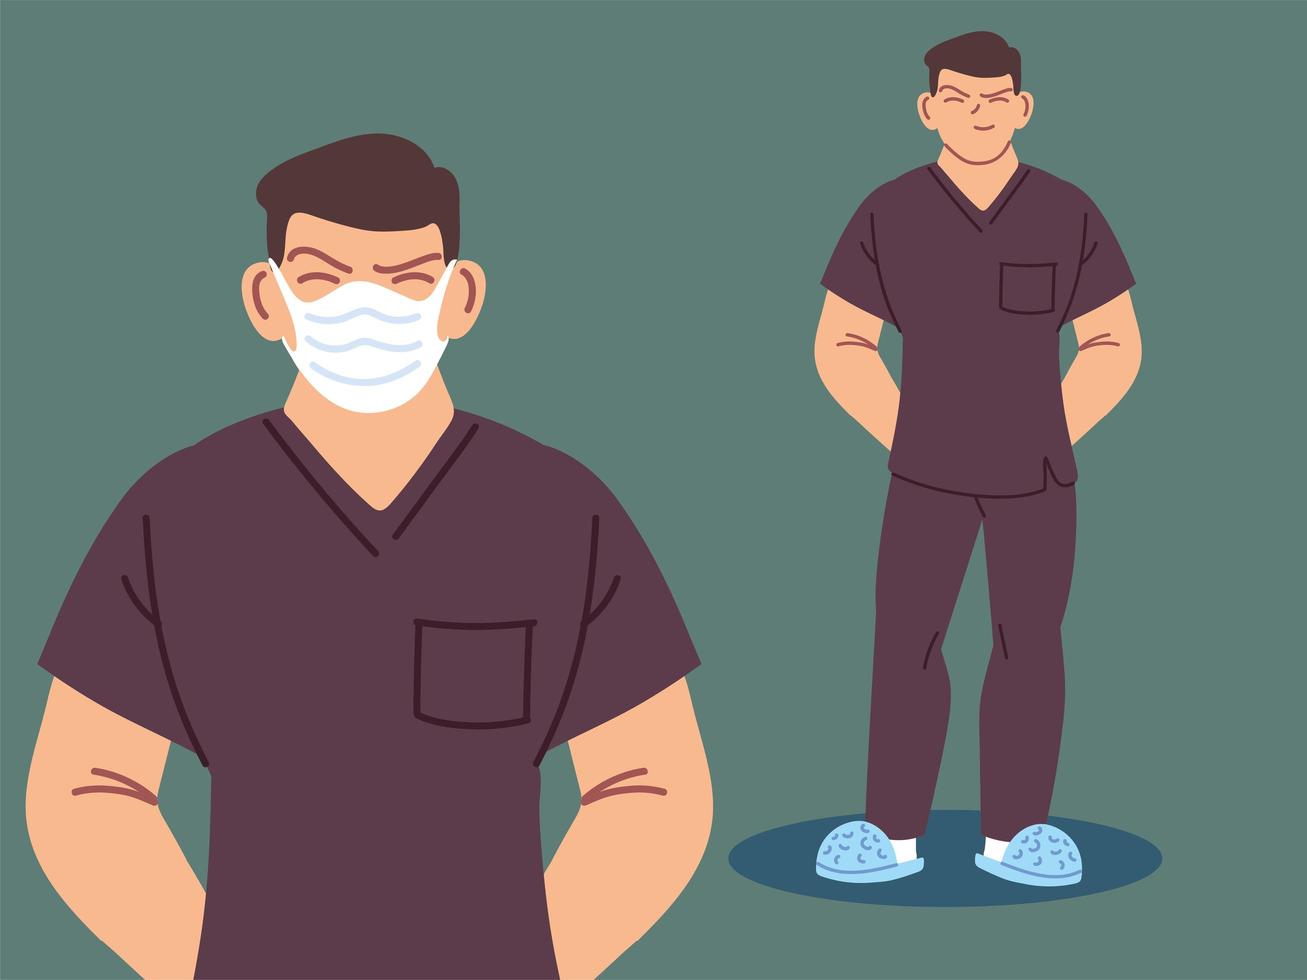 männliche Krankenschwester mit Gesichtsmaske vektor